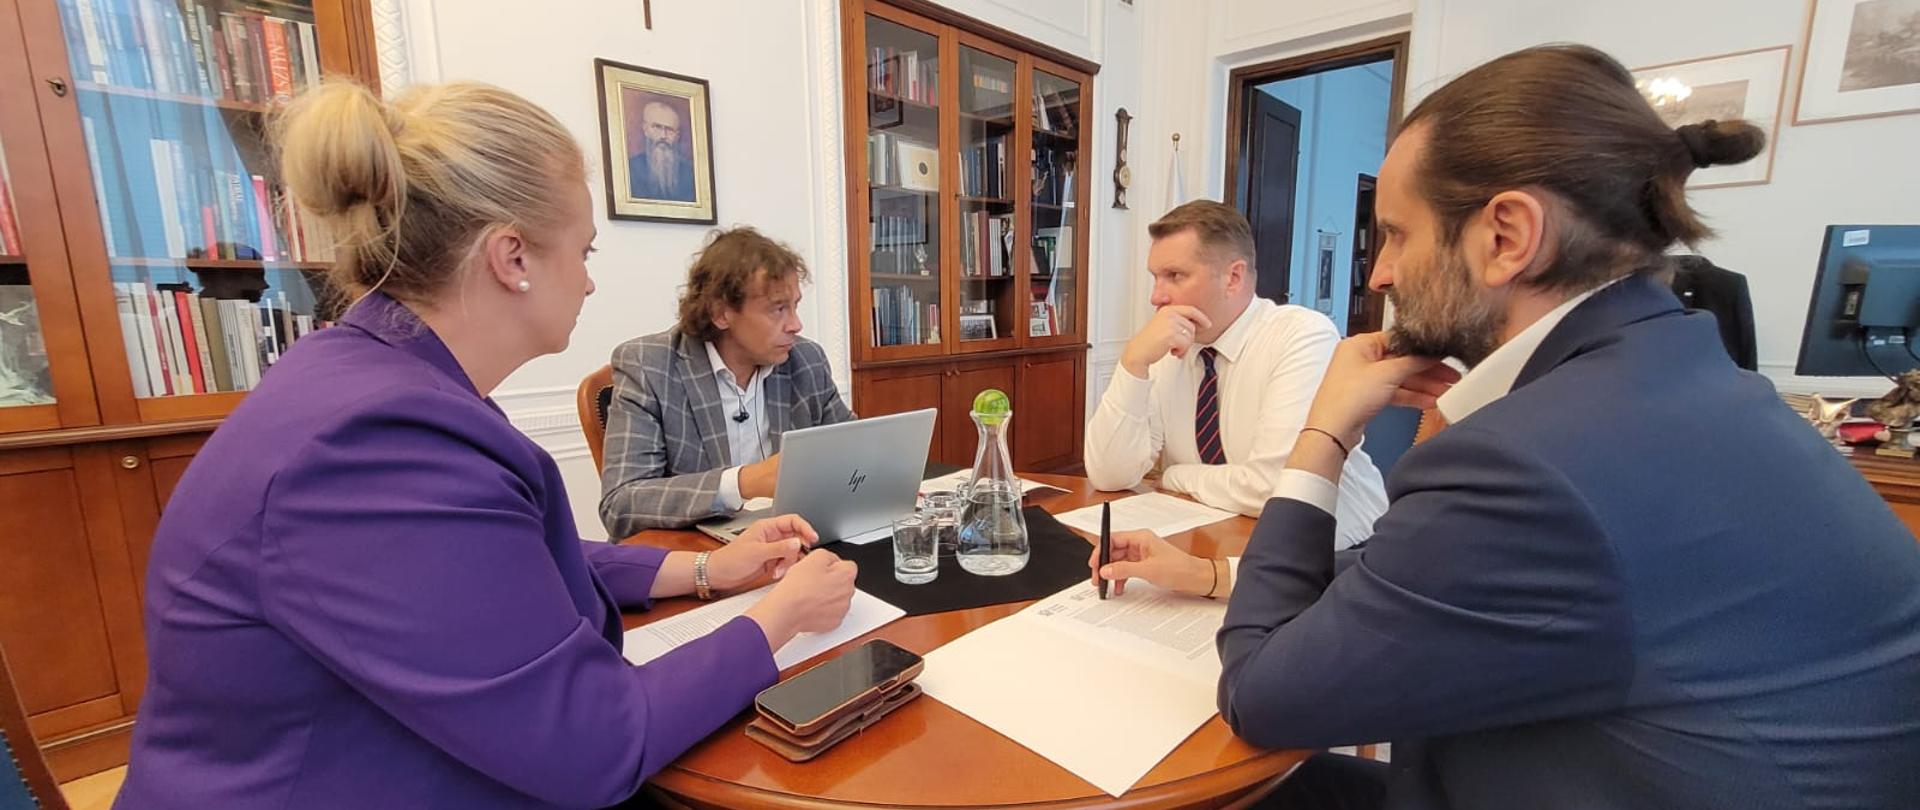 Przy okrągłym stoliku siedzi minister Czarnek i trzy osoby, przed nimi dokumenty i otwarty laptop.